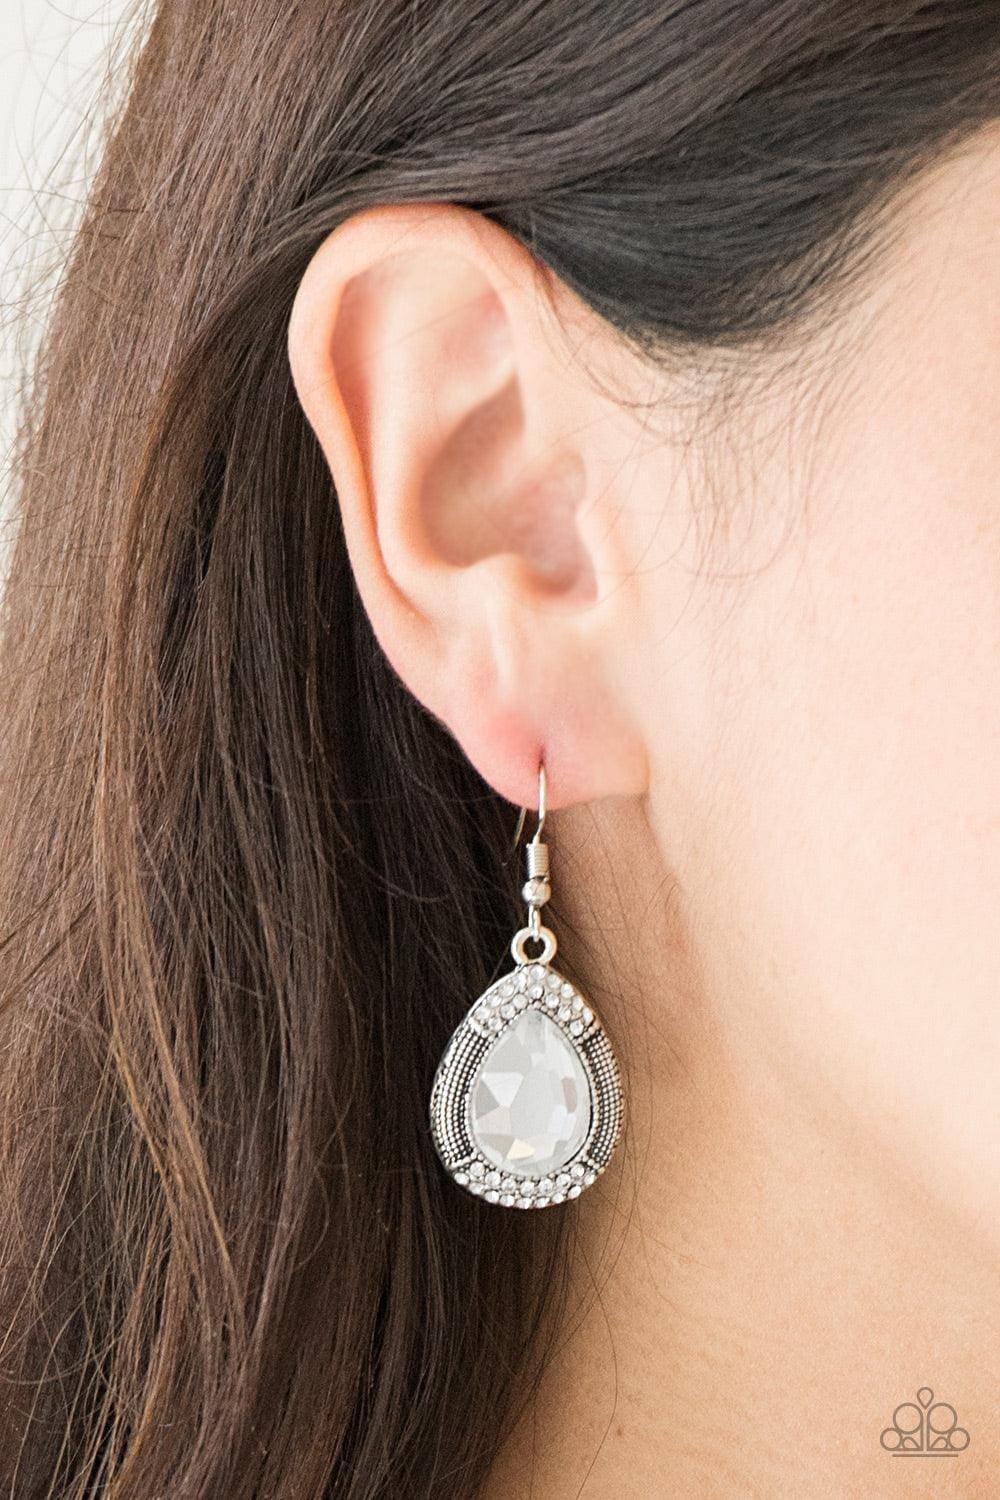 Paparazzi Accessories - Grandmaster Shimmer - White Earrings - Bling by JessieK